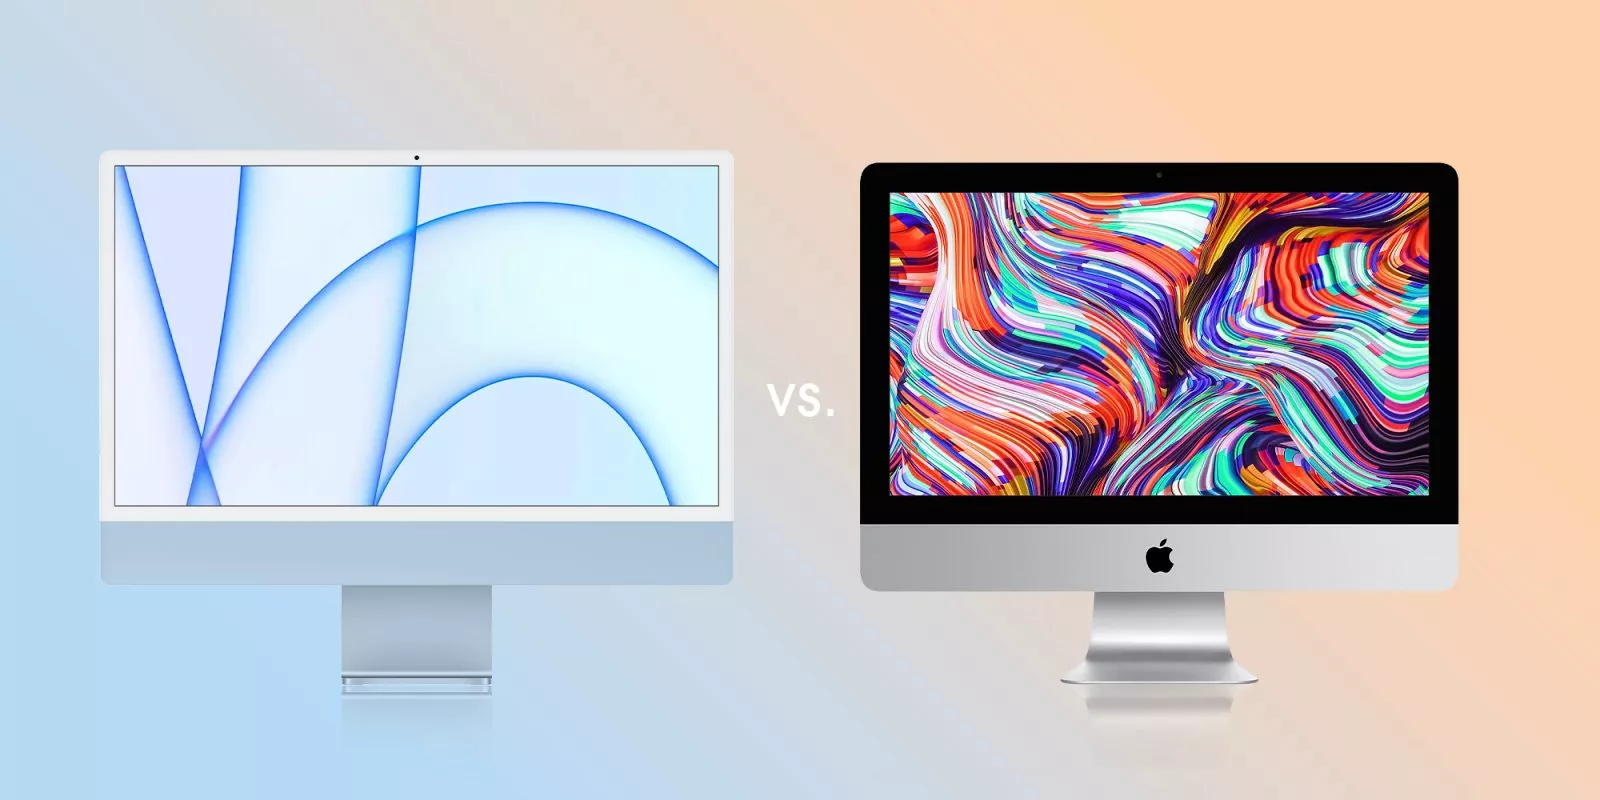 Không hỗ danh là chip M1, iMac M1 nhanh hơn tới 56% so với iMac 21,5 inch cao cấp thế hệ trước